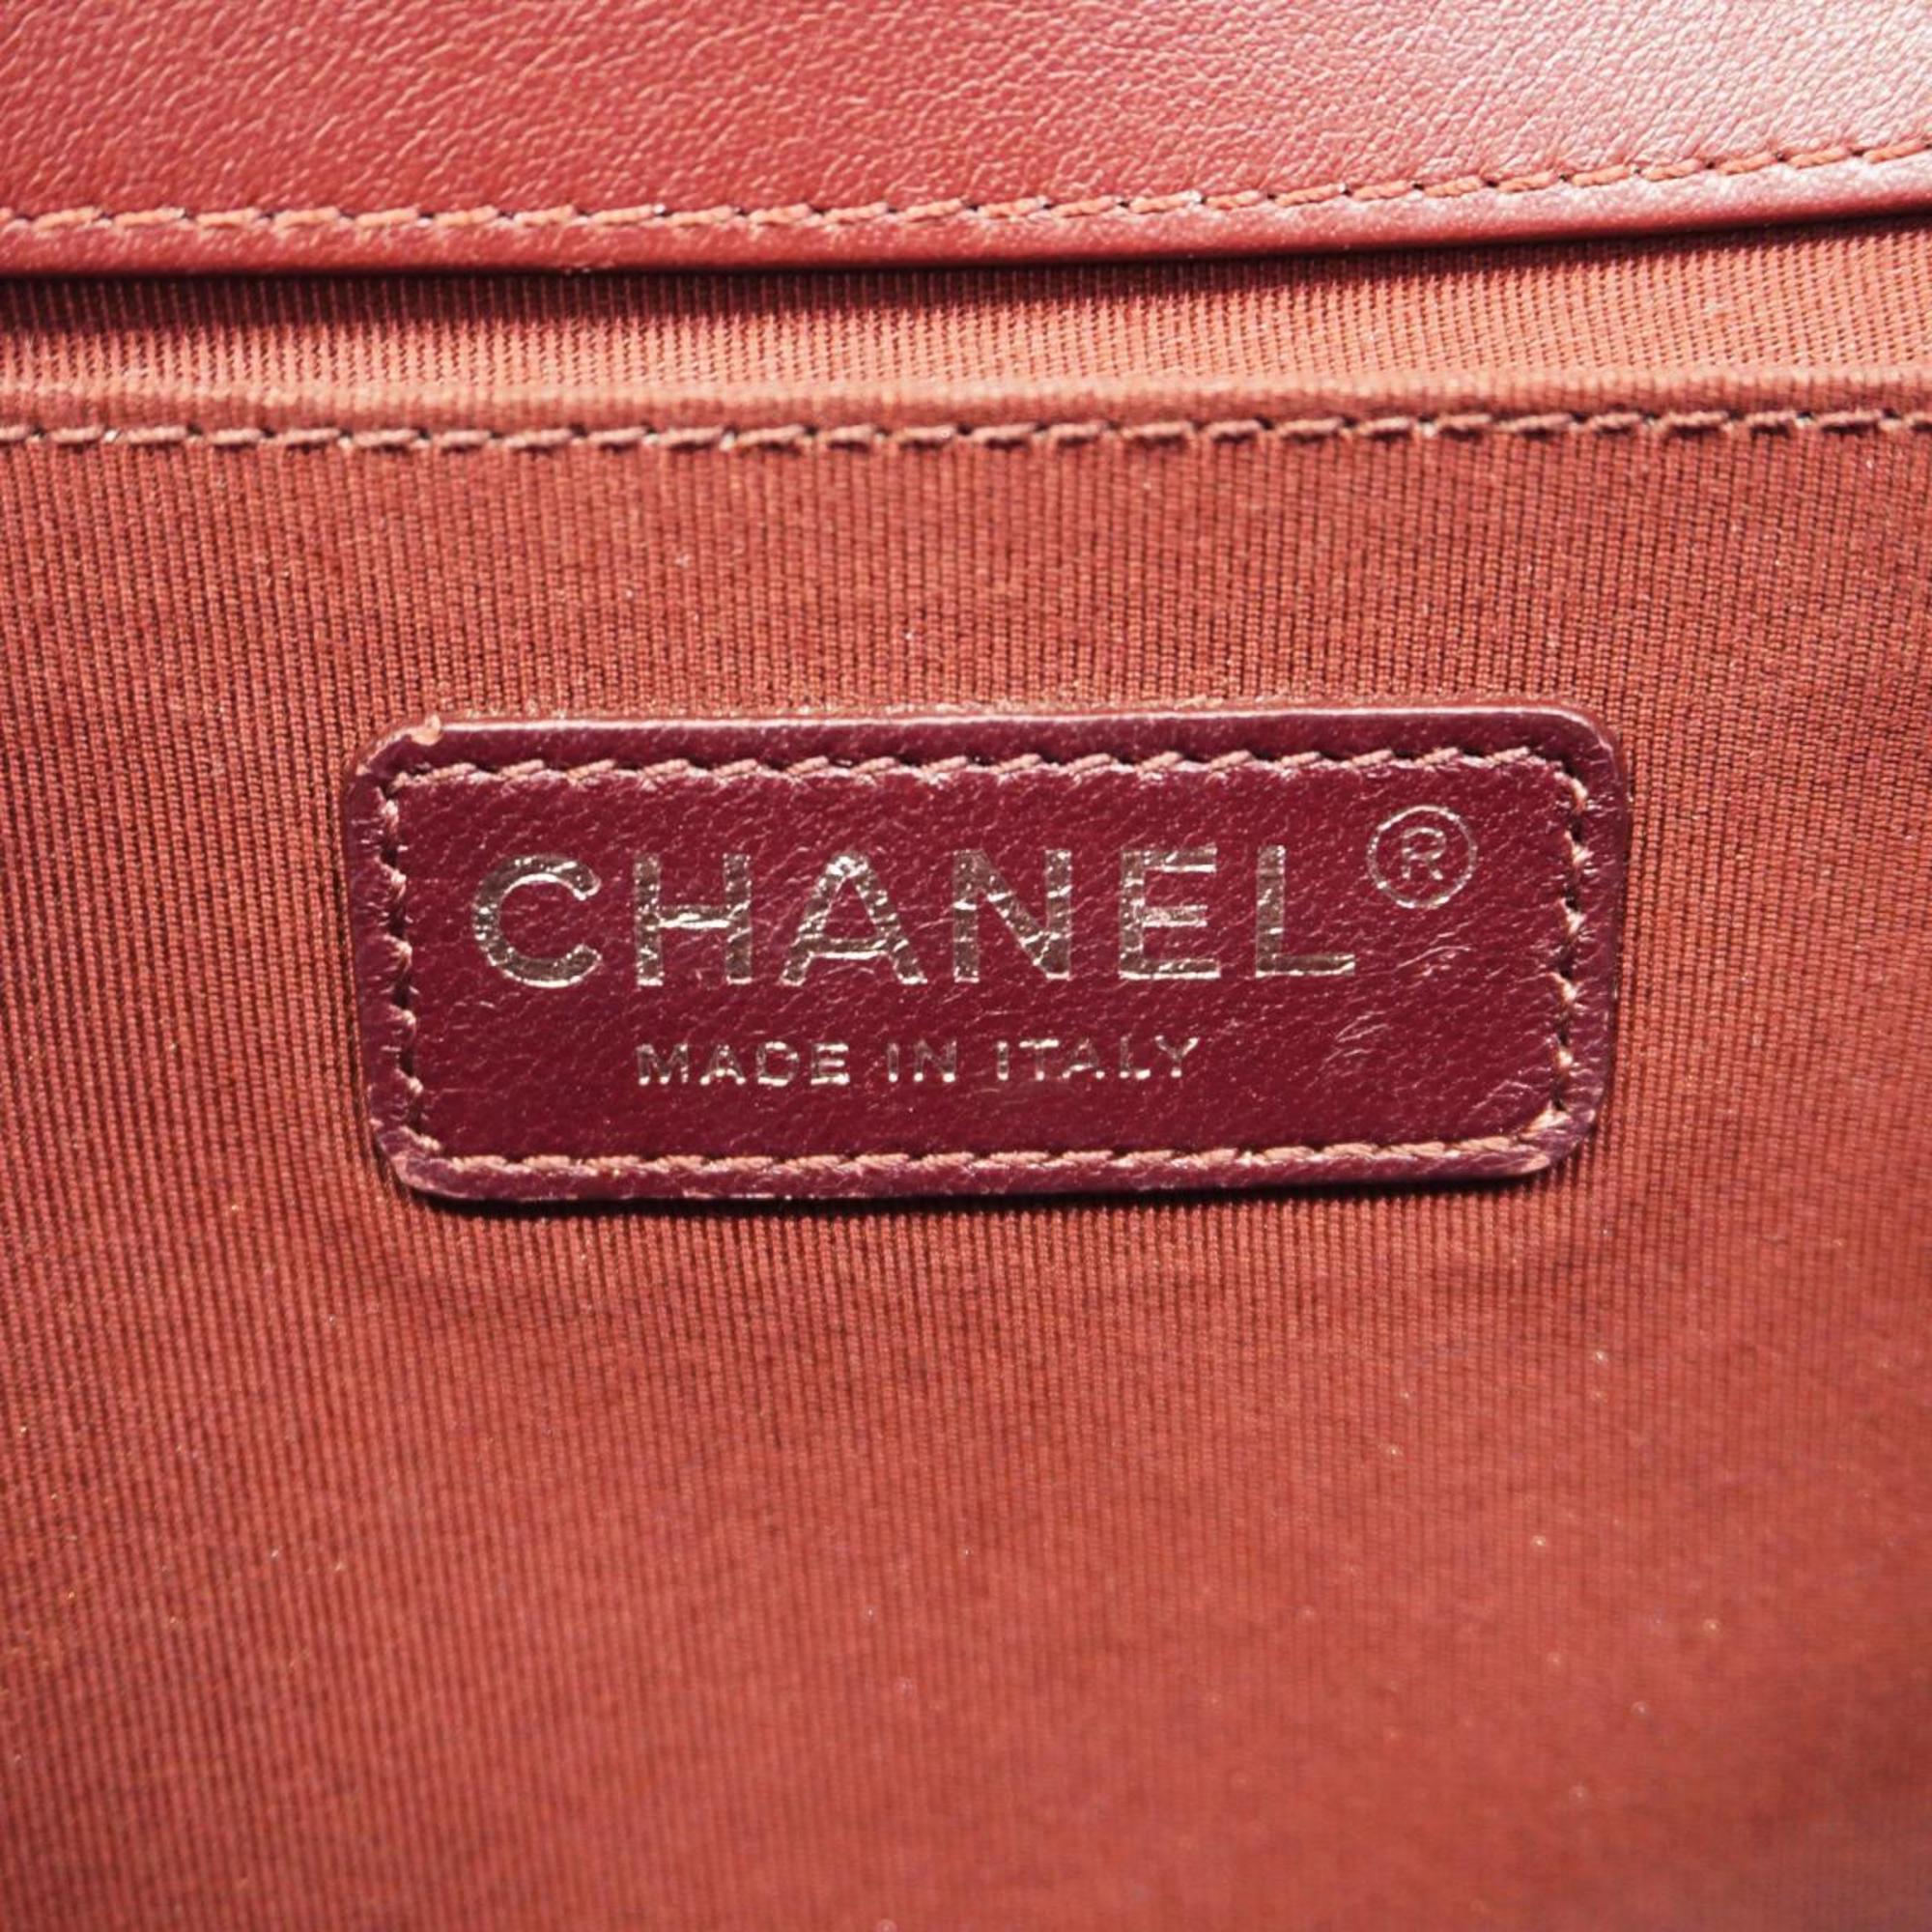 シャネル(Chanel) シャネル ショルダーバッグ ボーイシャネル チェーンショルダー スウェード ボルドー  レディース